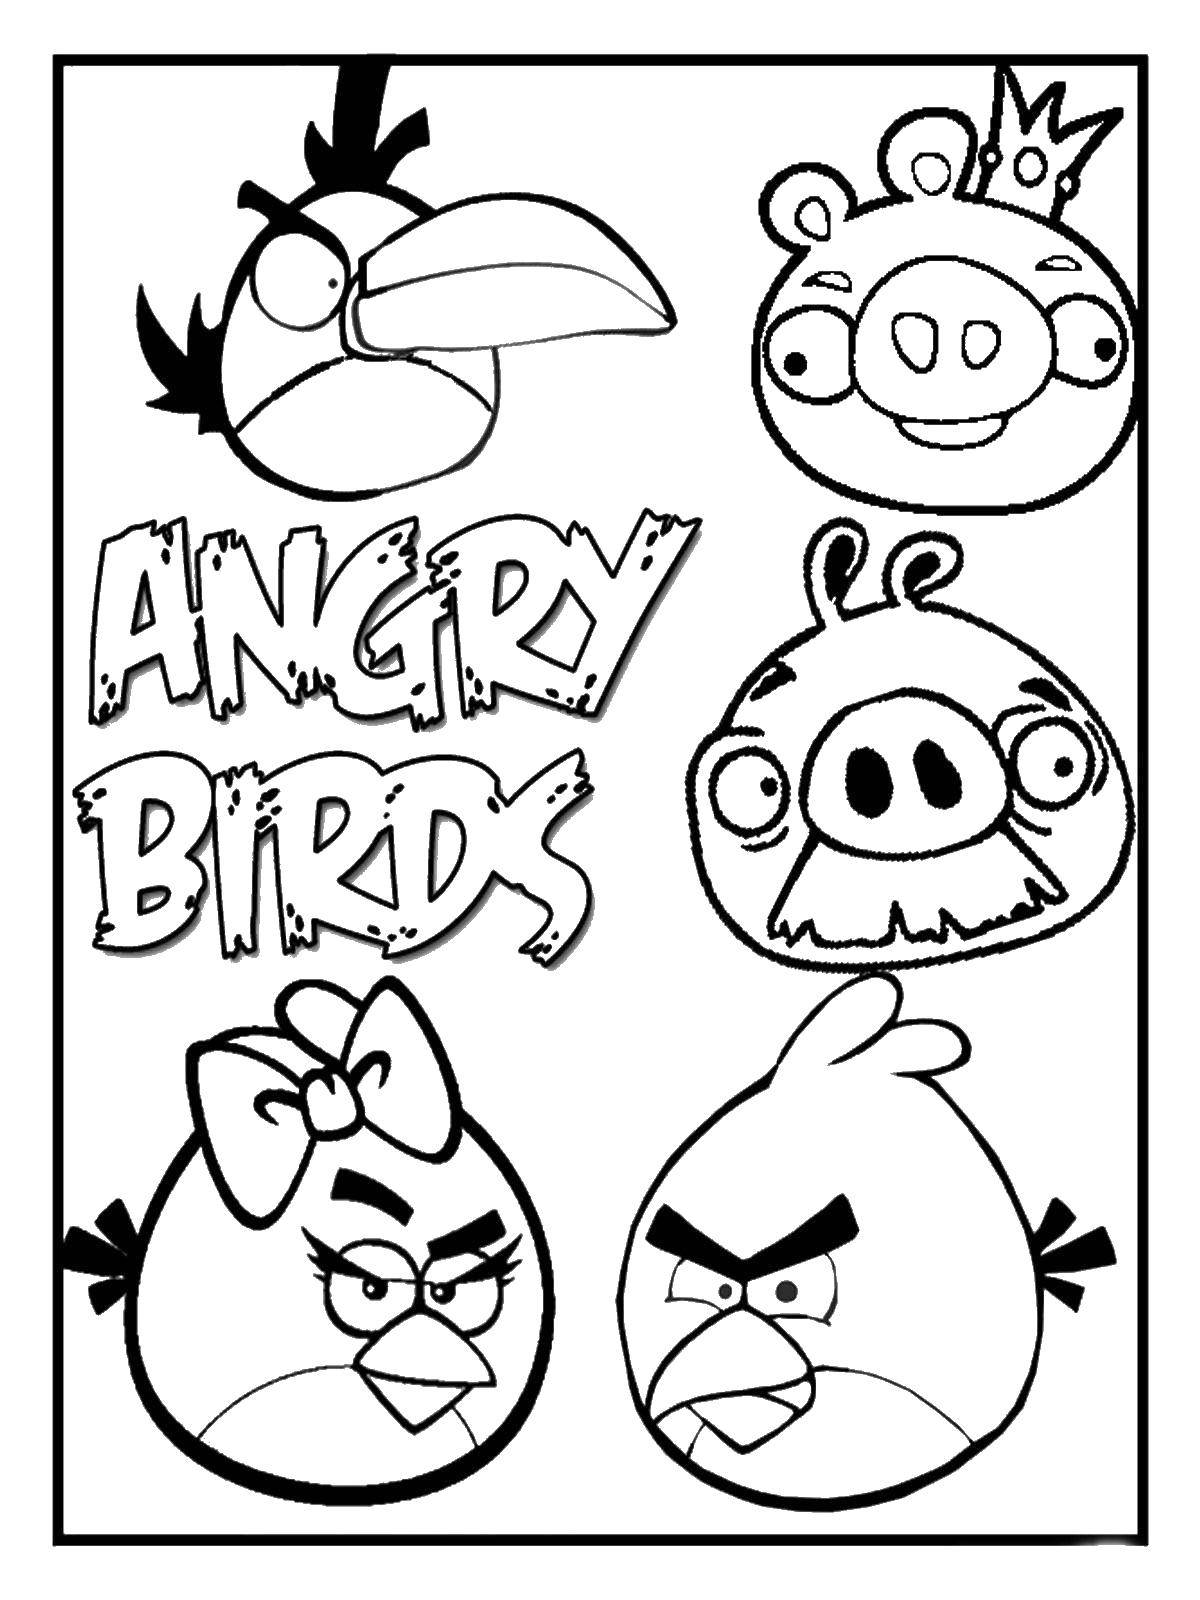 Название: Раскраска Angry birds и король свин. Категория: angry birds. Теги: angry birds, энгри бердс.